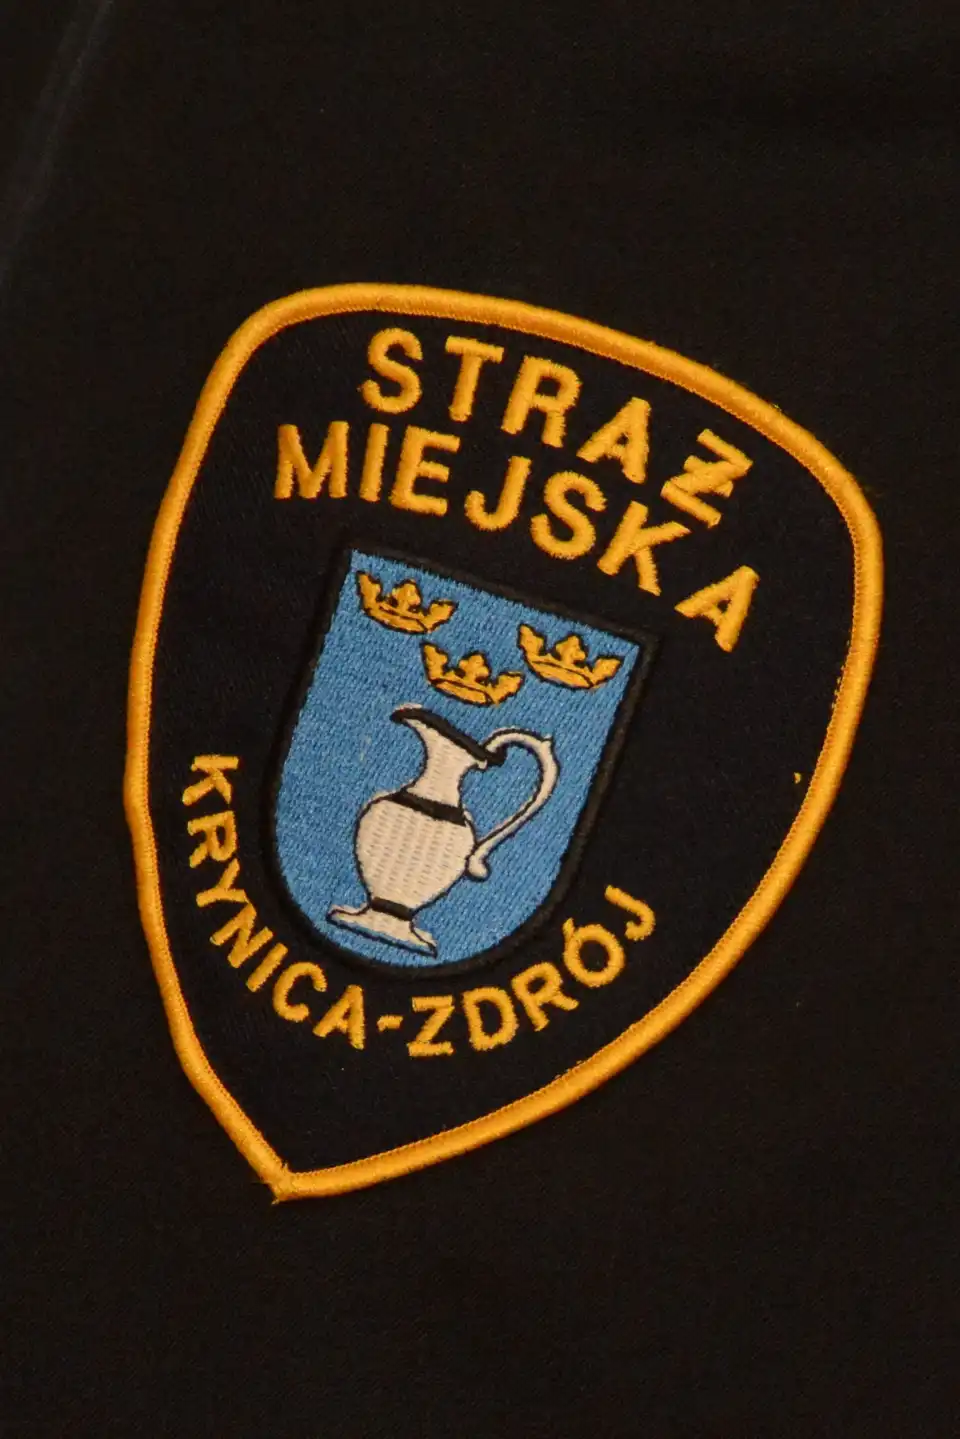 Konferencja z okazji 30-lecia reaktywowania Straży Miejskiej w Krynicy-Zdroju